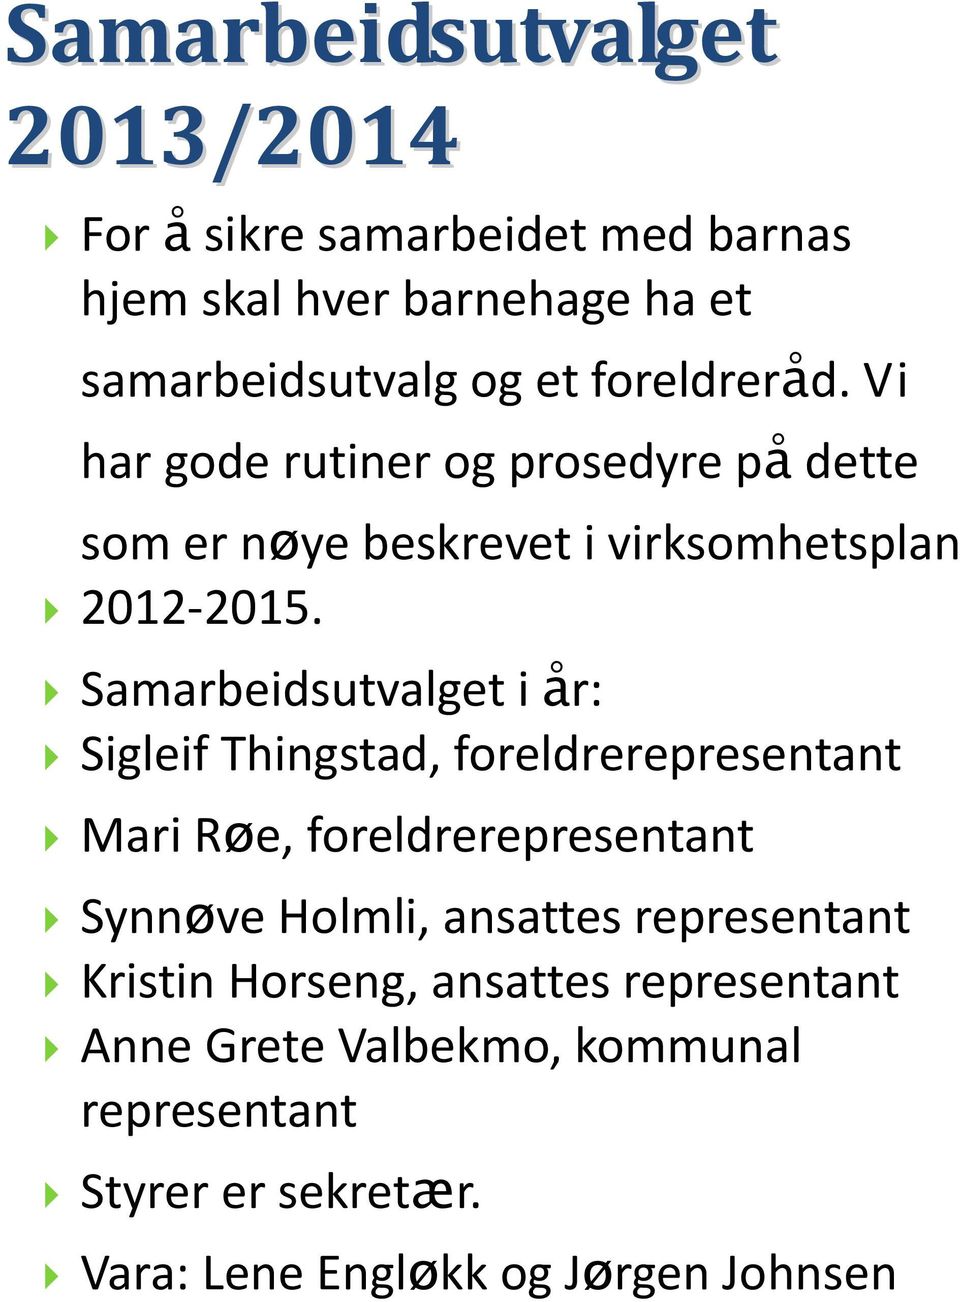 Samarbeidsutvalget i år: Sigleif Thingstad, foreldrerepresentant Mari Røe, foreldrerepresentant Synnøve Holmli, ansattes